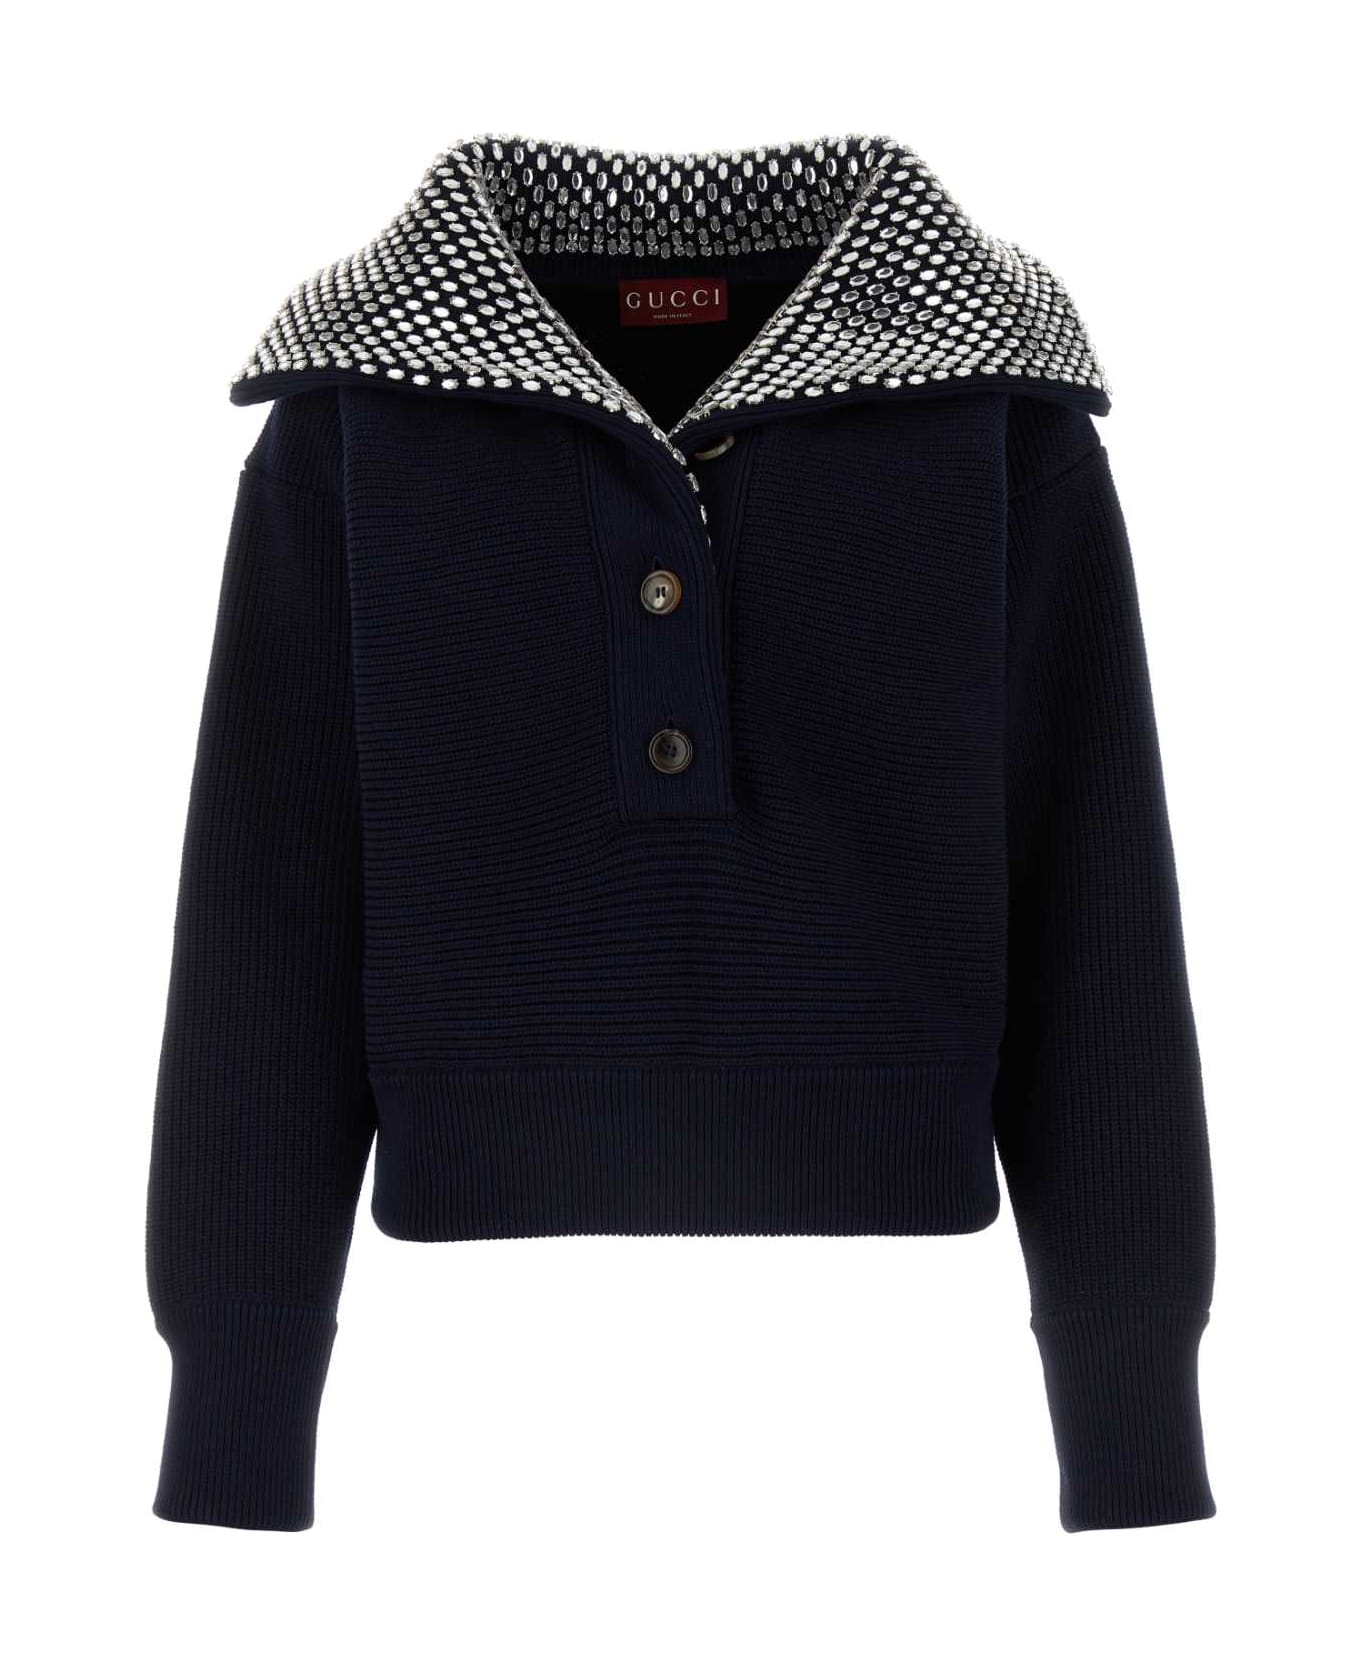 Gucci Navy Blue Cotton Blend Sweater - NAVYMIX フリース